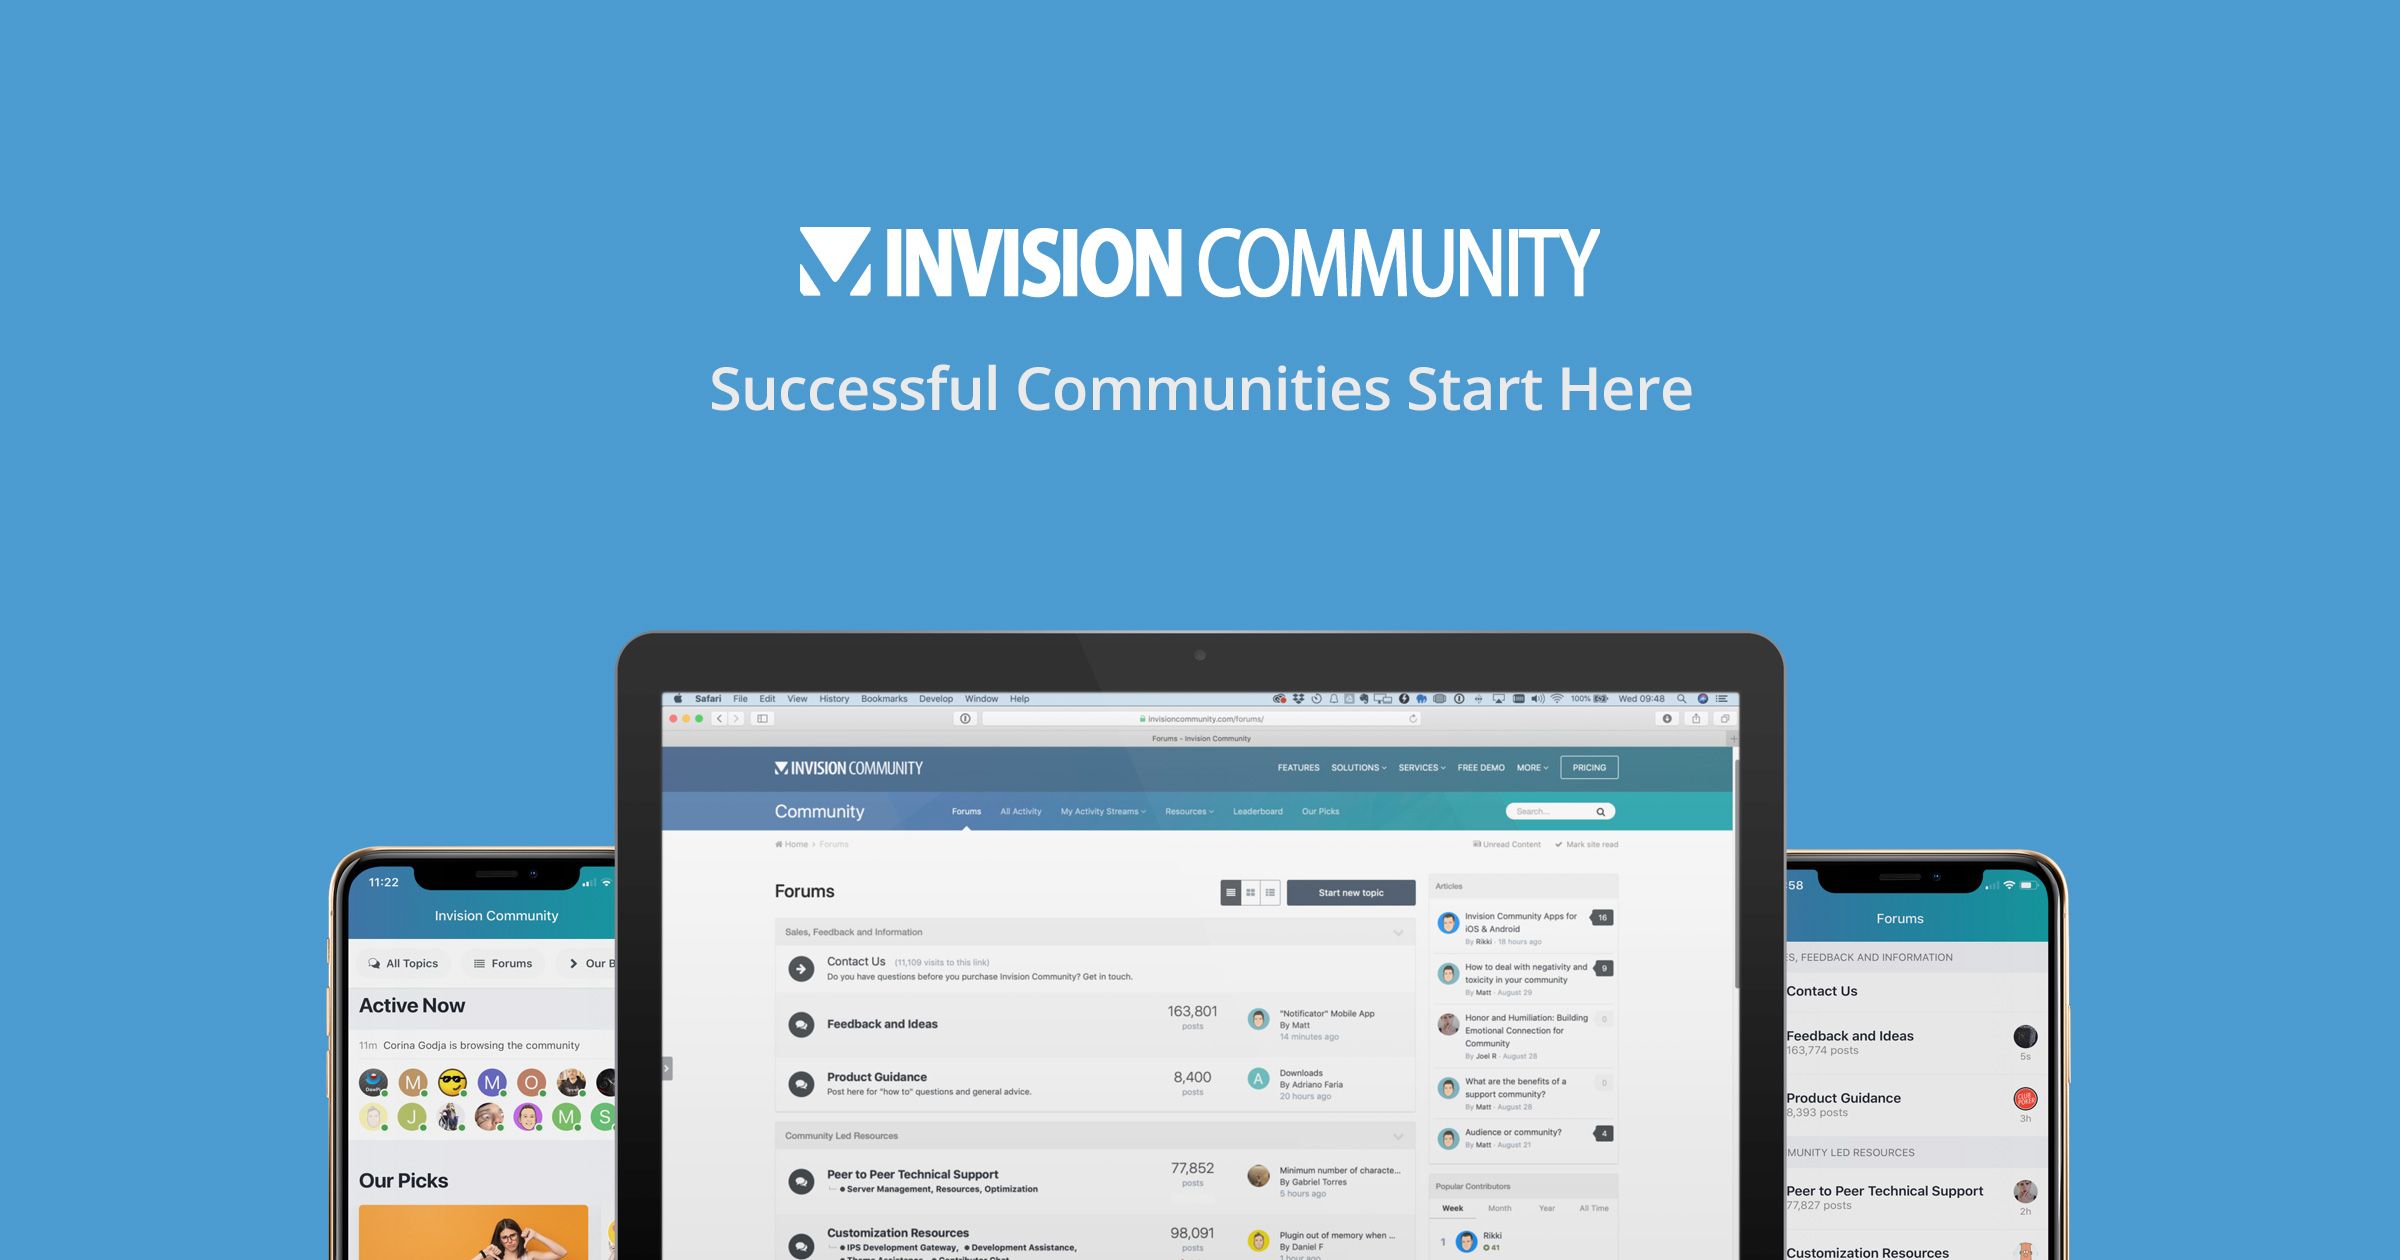 invisioncommunity.com